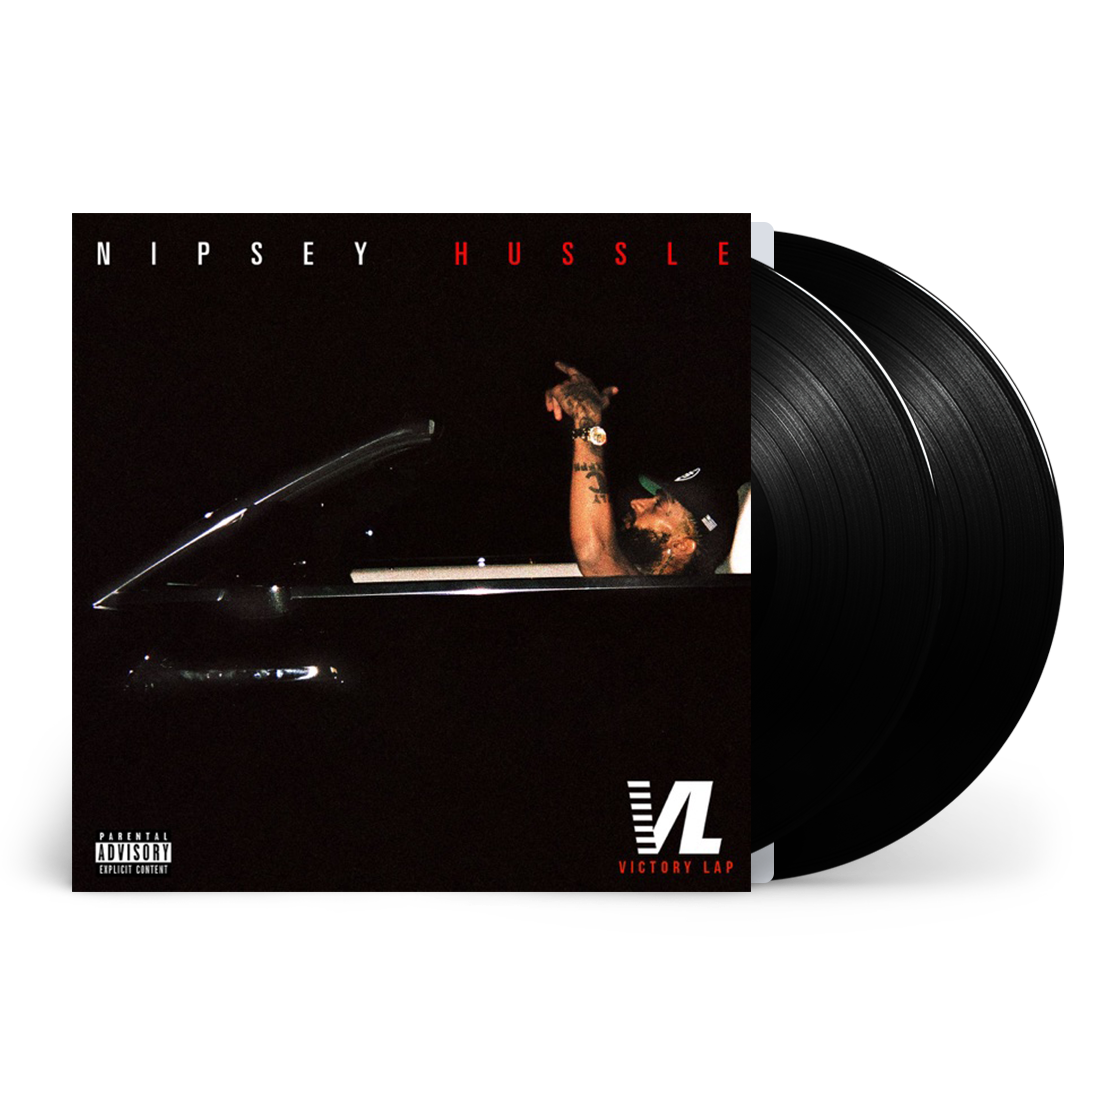 Victory Lap: Vinyl 2LP